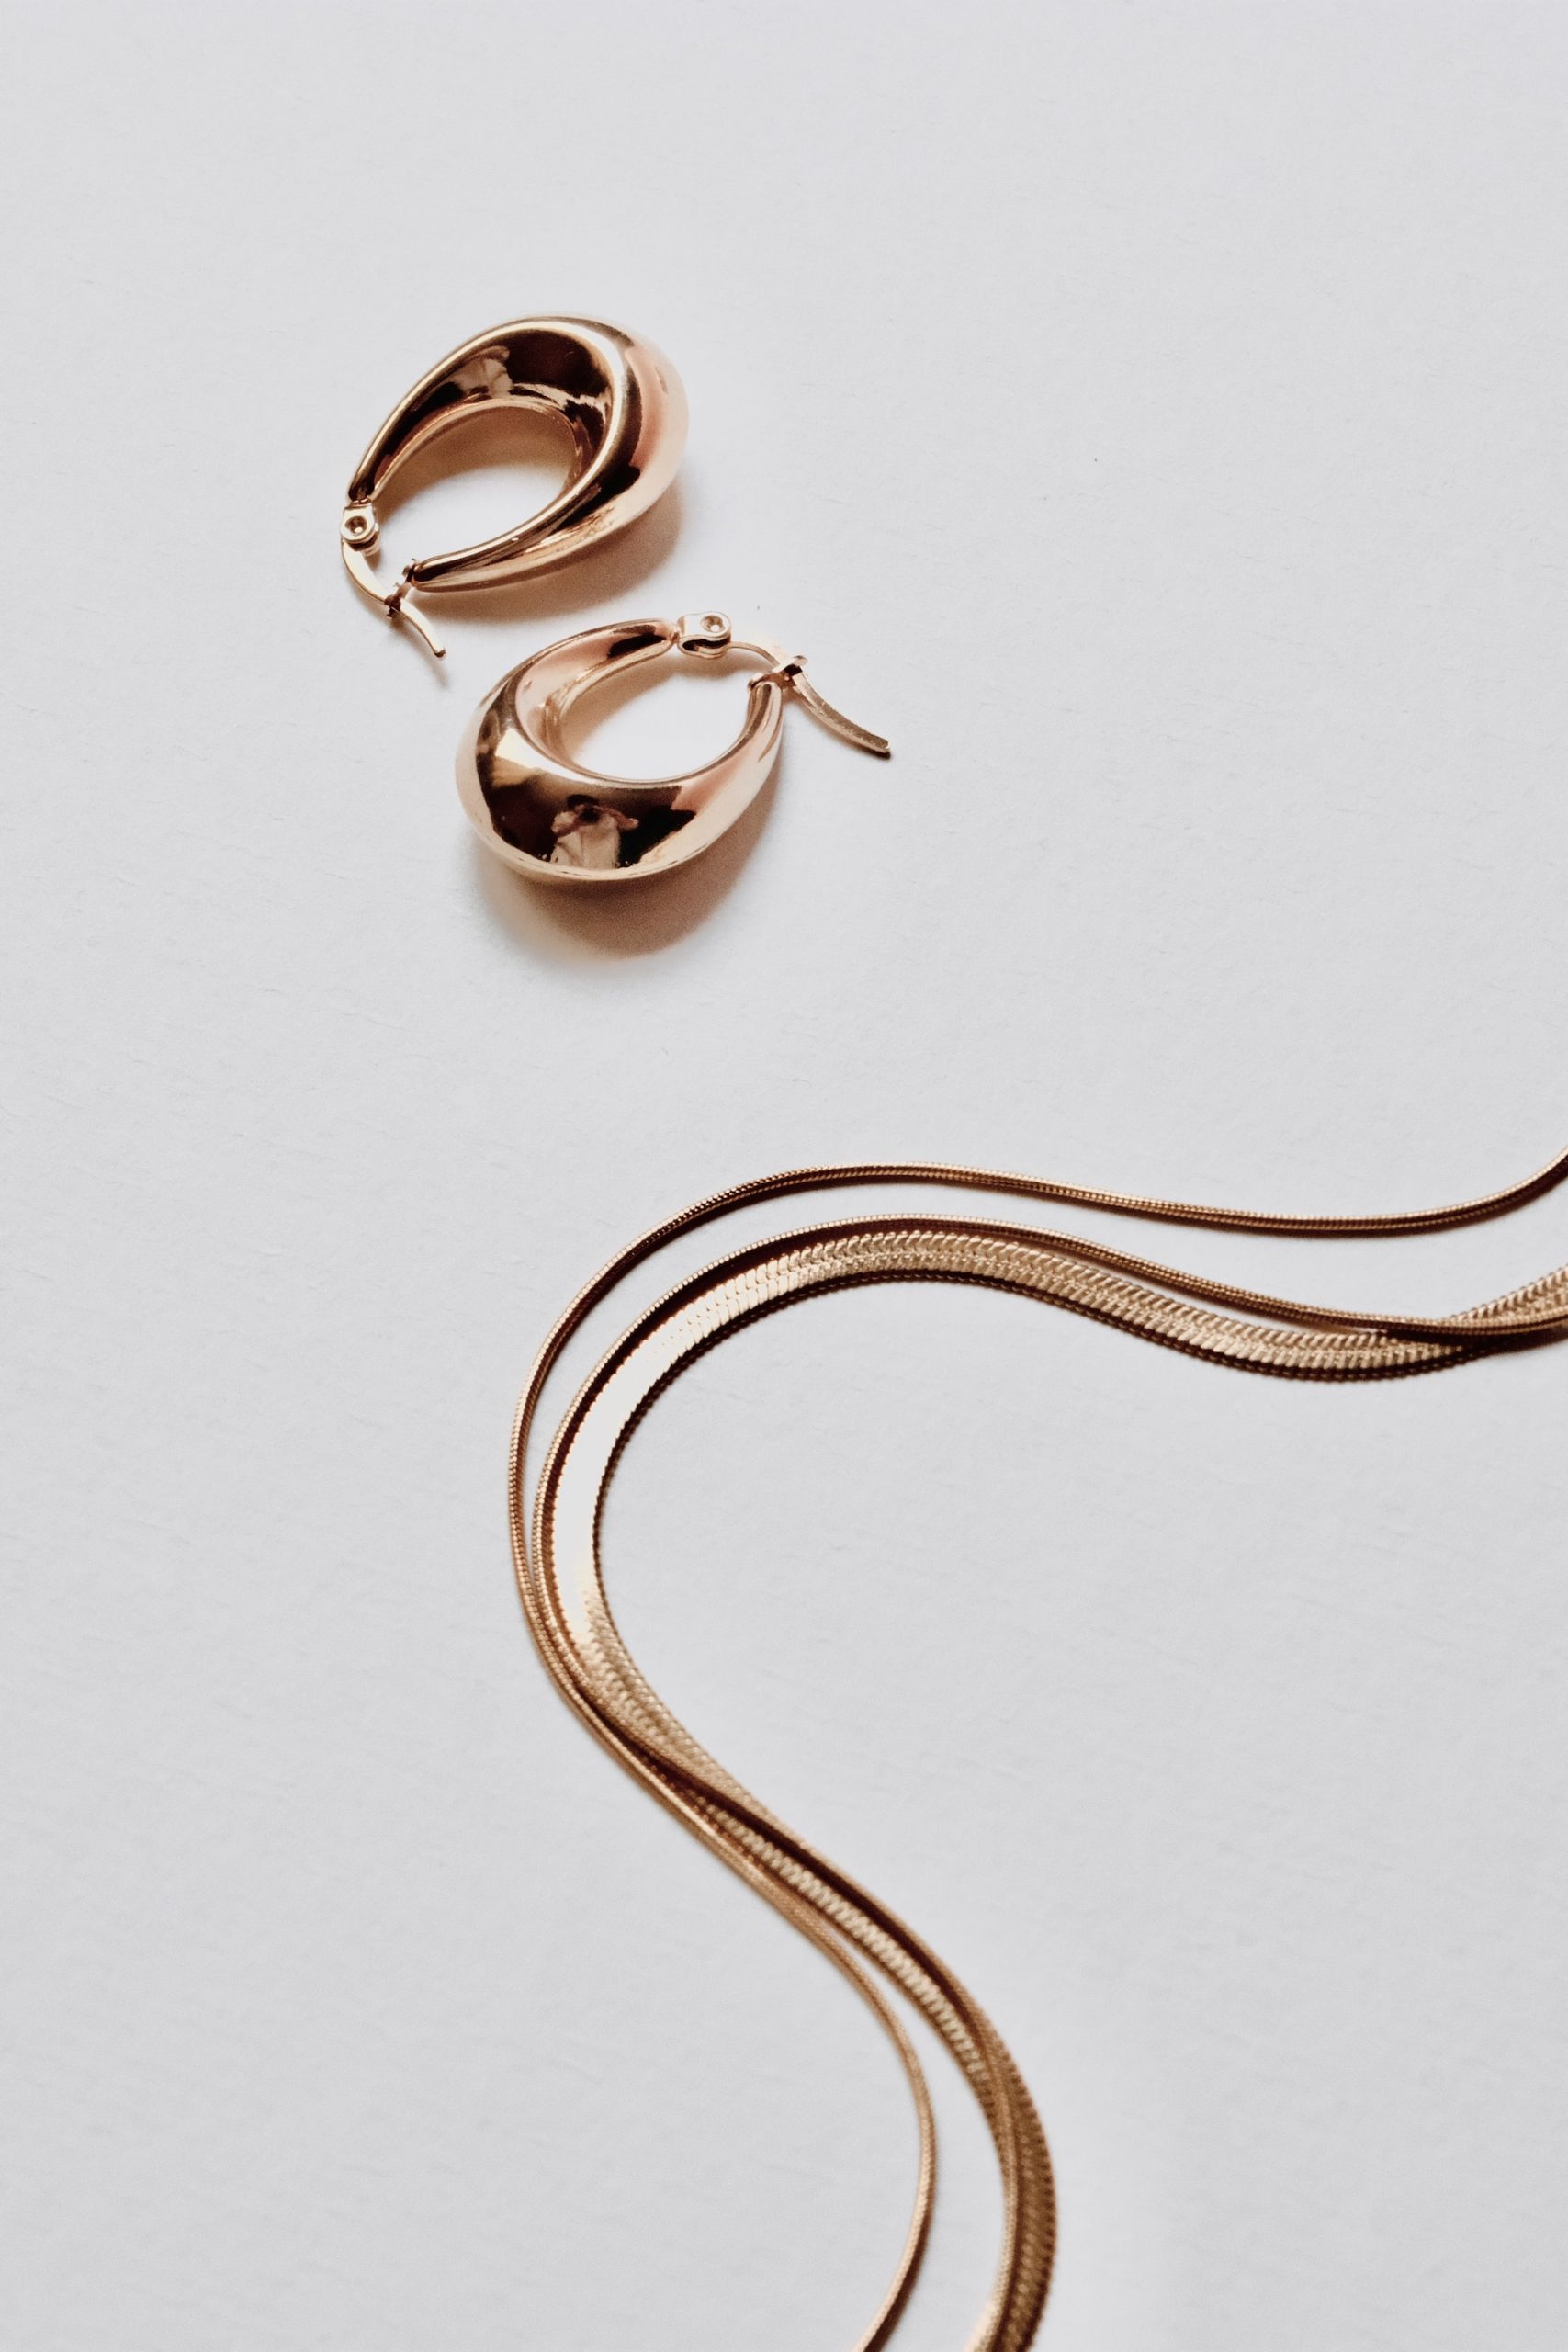 Egal, ob Ohrringe, Halsketten oder Armbänder, achtet darauf, dass die Beschenkte den Goldschmuck auch tatsächlich im Alltag tragen kann.